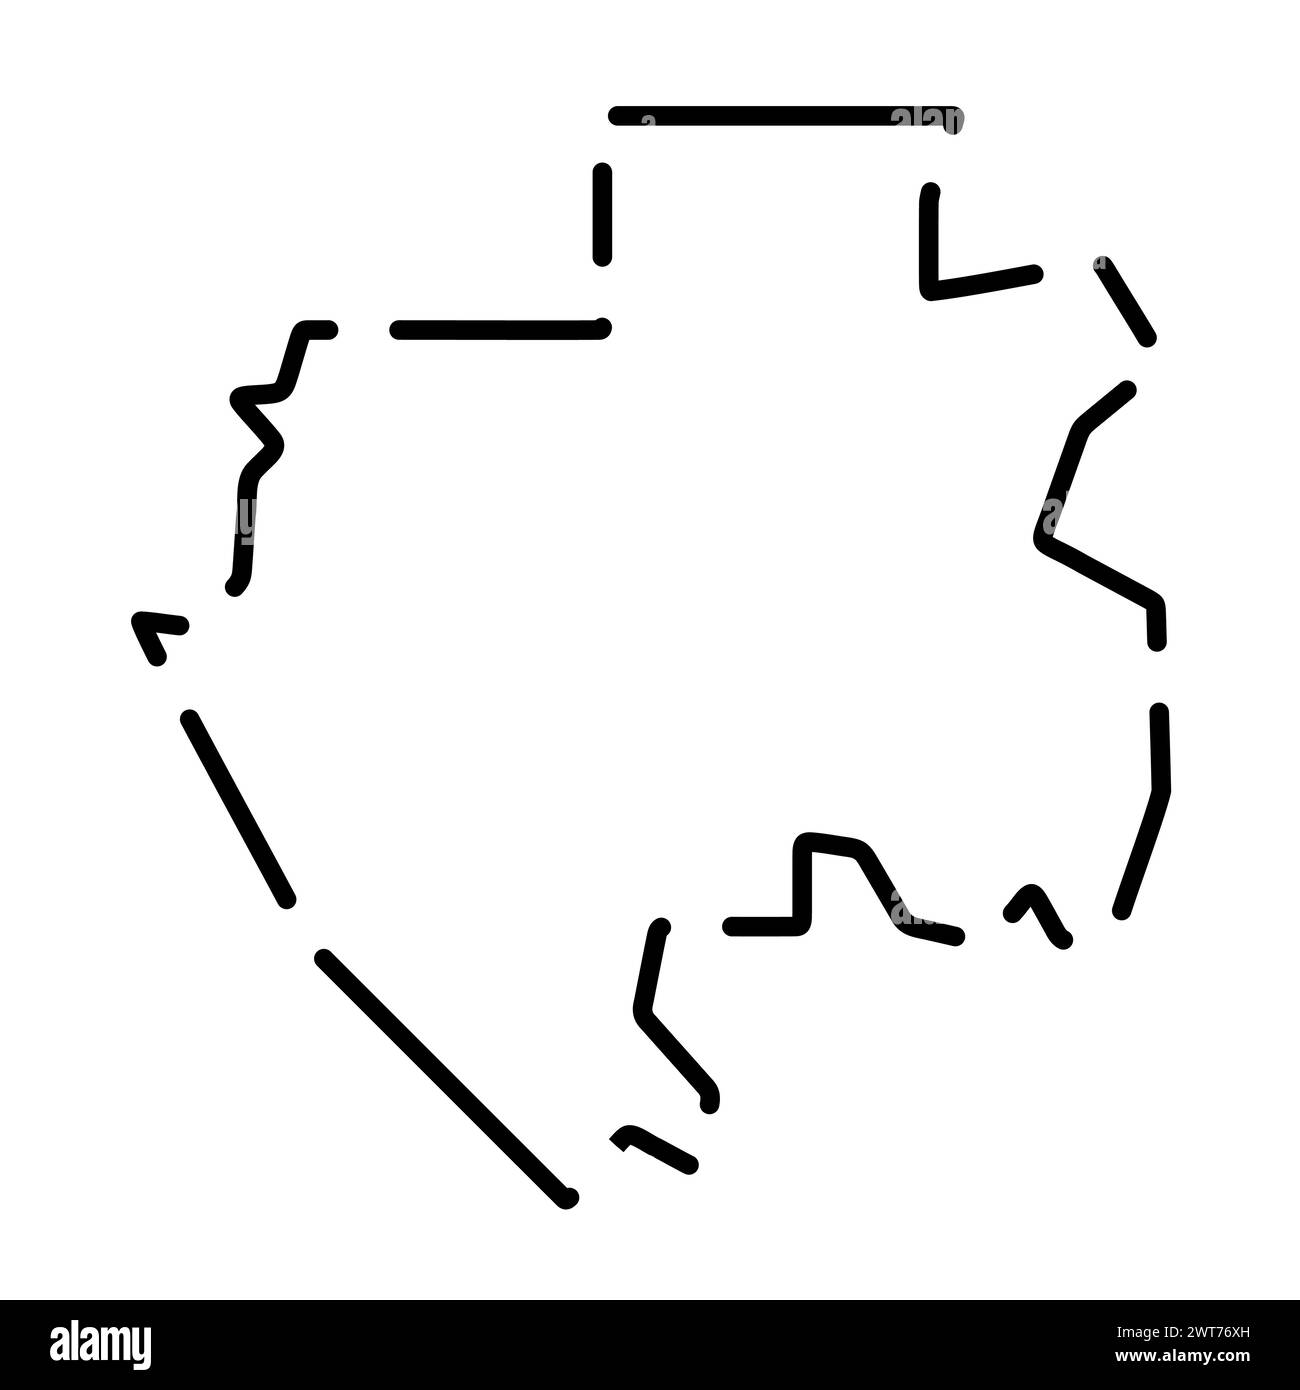 Vereinfachte Karte für Gabun. Schwarze gebrochene Kontur auf weißem Hintergrund. Einfaches Vektorsymbol Stock Vektor